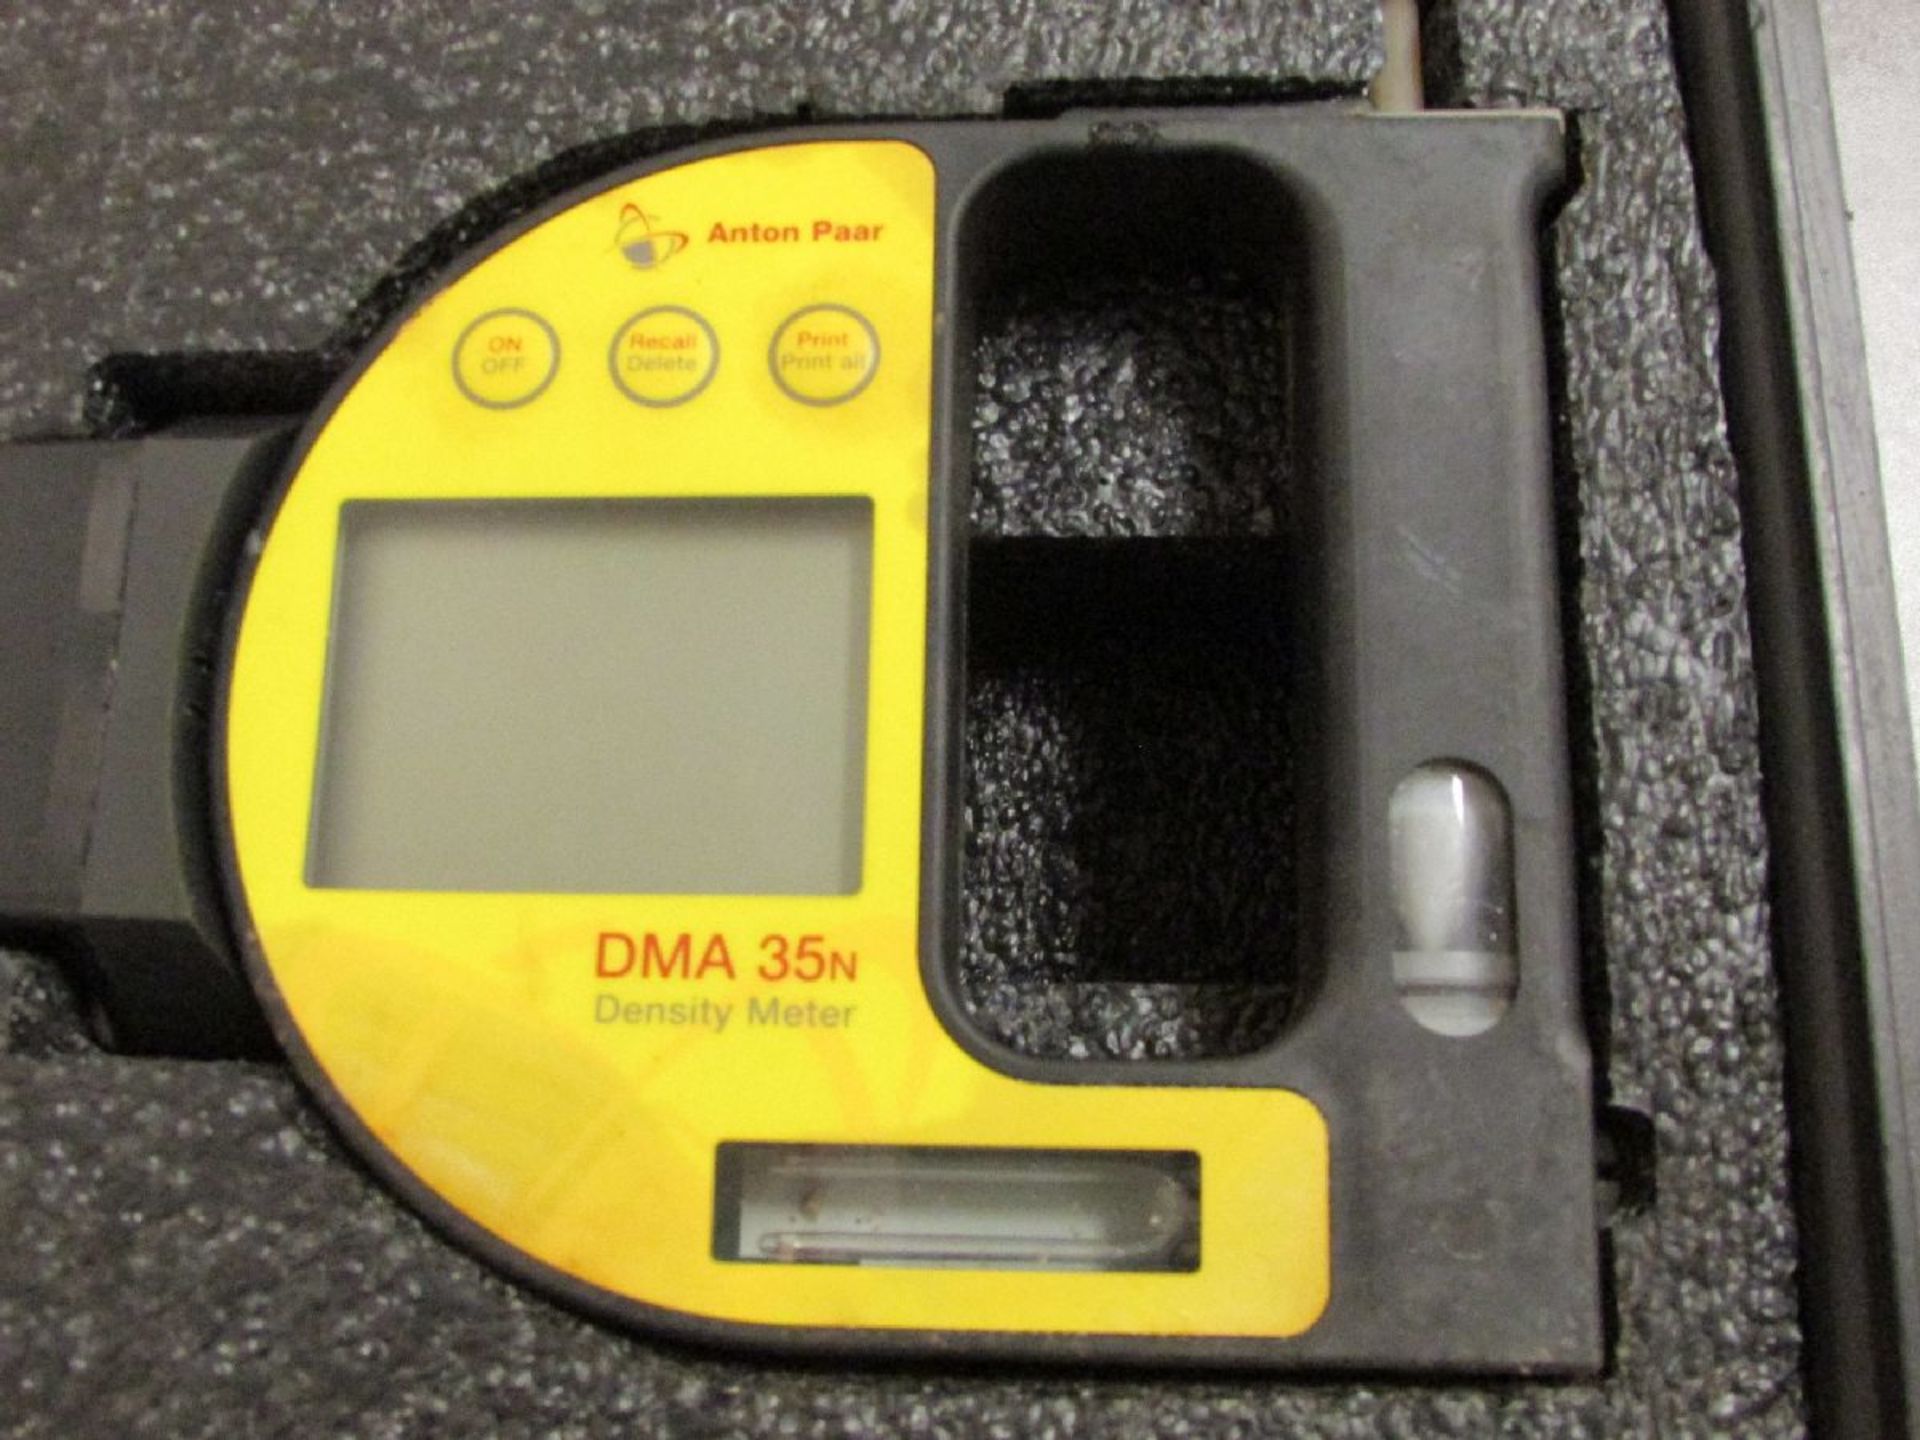 Anton Paar Model DMA 35N Digital Density Meter - Image 2 of 3